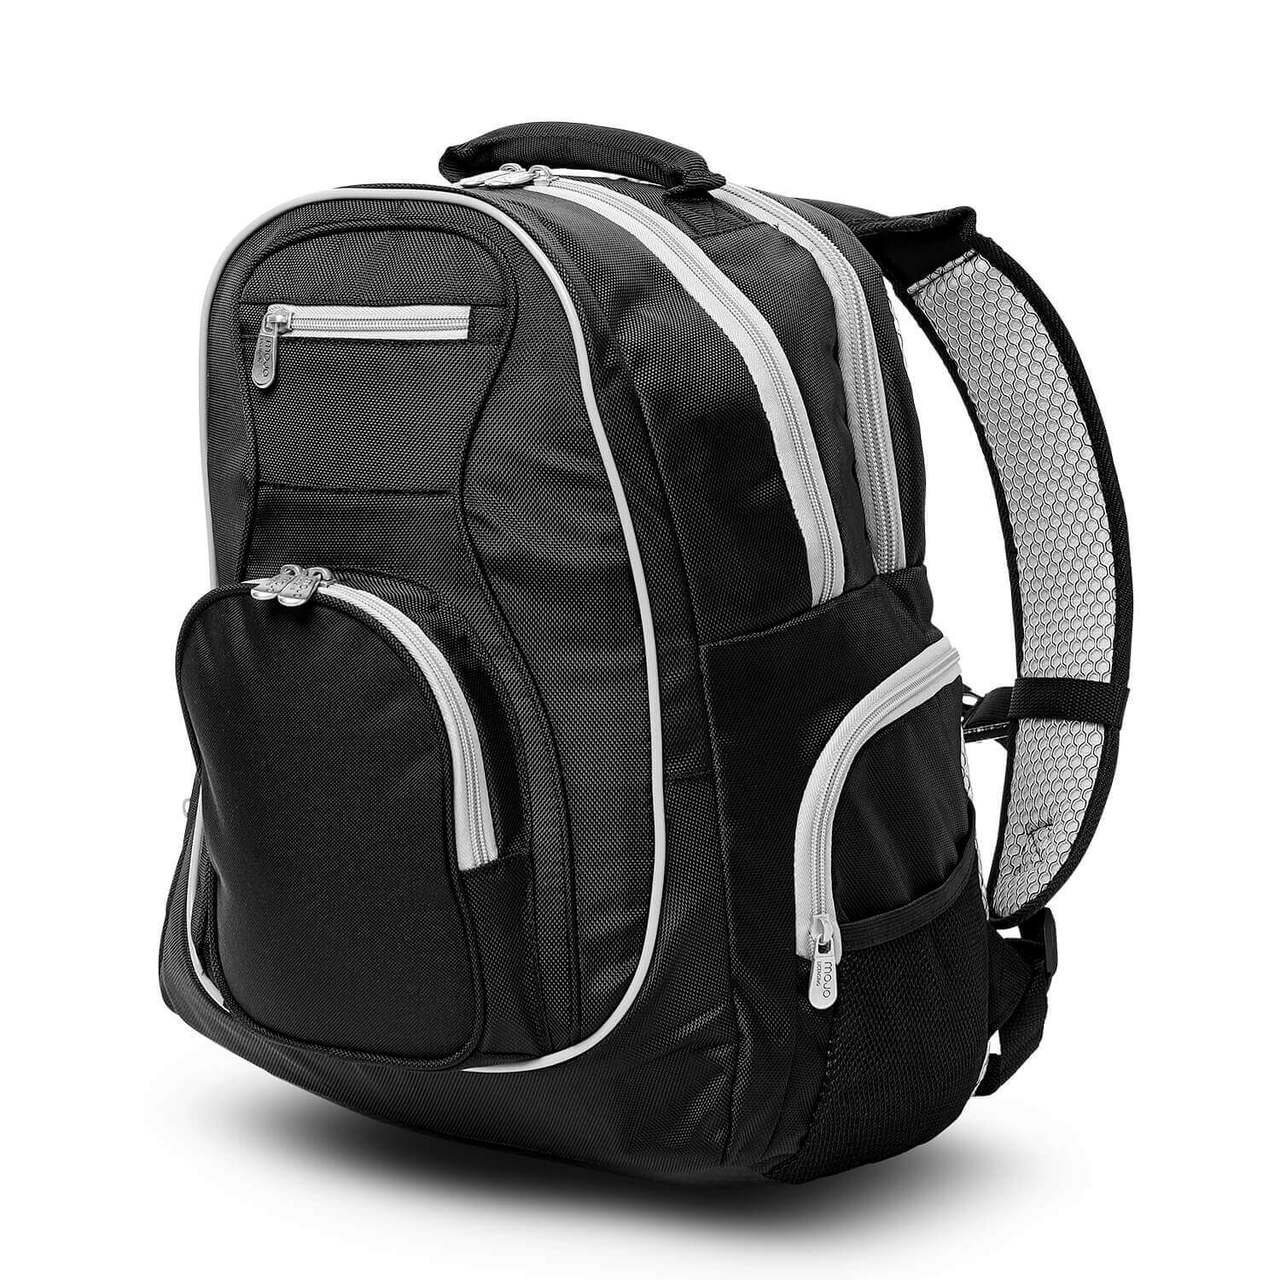 Sharks Backpack | San Jose Sharks Laptop Backpack